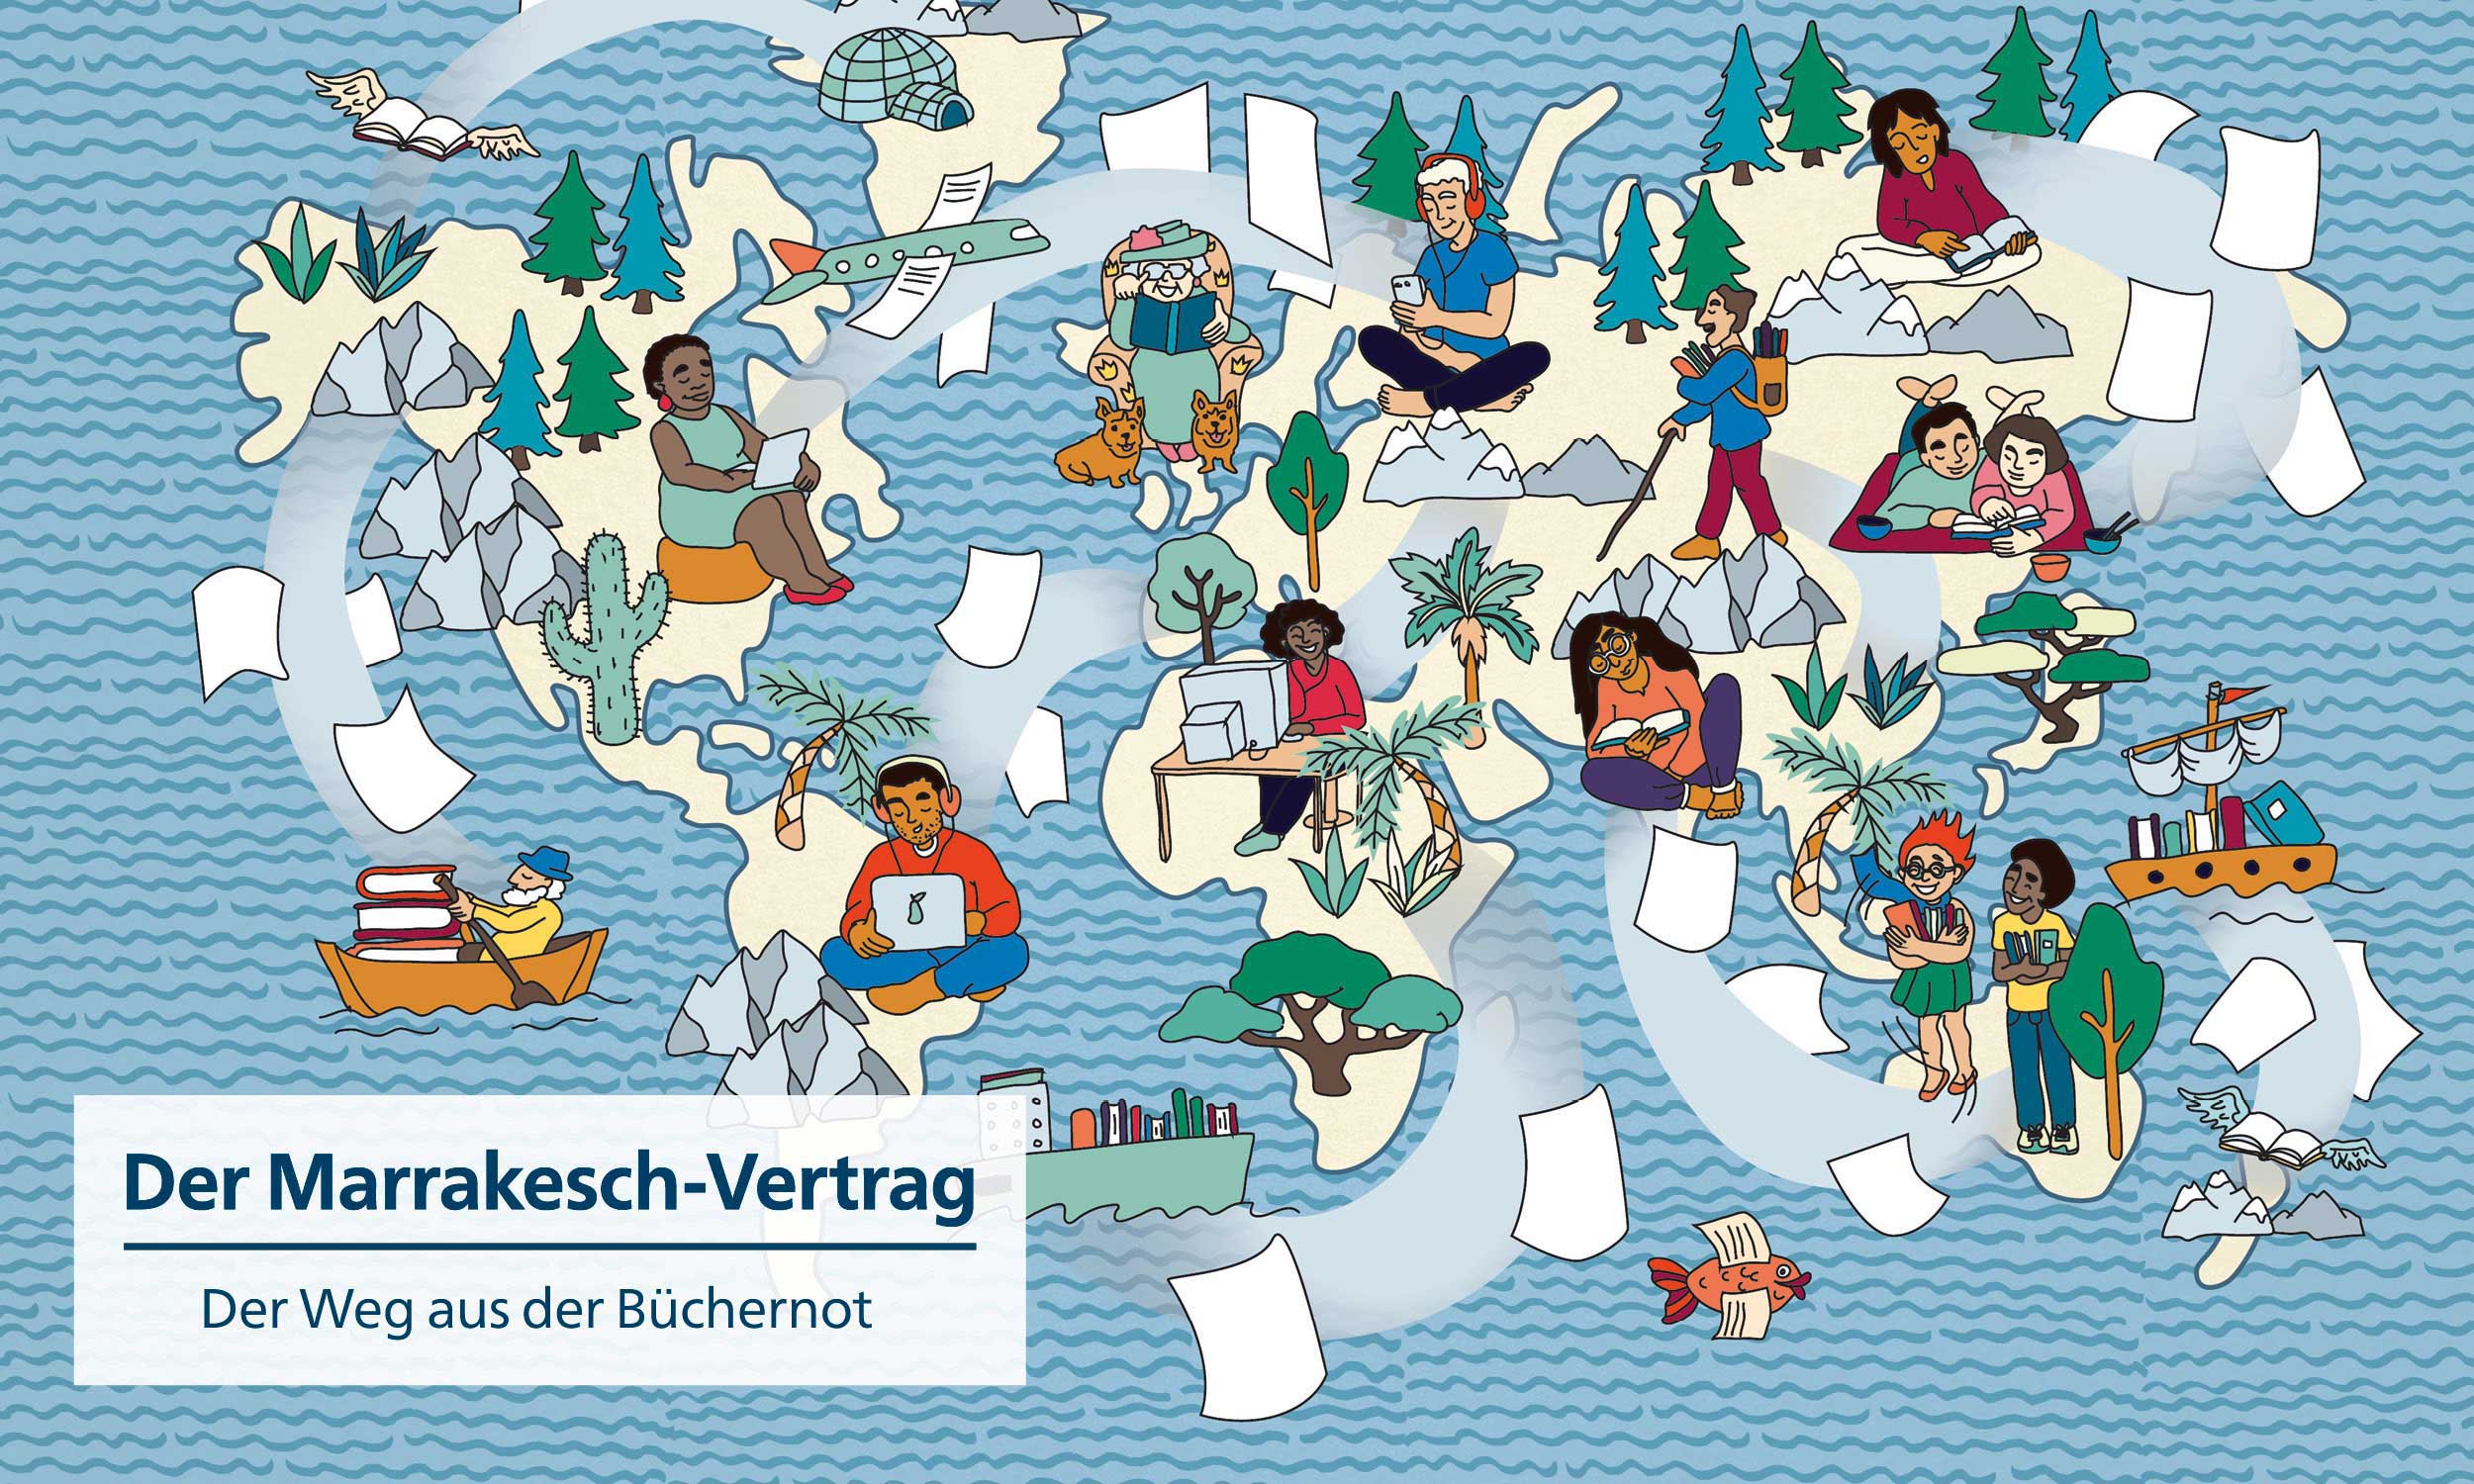 Handgezeichnete Illustration zu einem Artikel über den Marrakesch-Vertrag, Unterzeile „Der Weg aus der Büchernot“. Es zeigt eine Weltkarte mit Bergen, Bäumen, Schiffen, Flugzeugen und Vögeln. In den unterschiedlichen Regionen der Welt werden Menschen gezeigt, die auf verschiedene Weisen lesen.